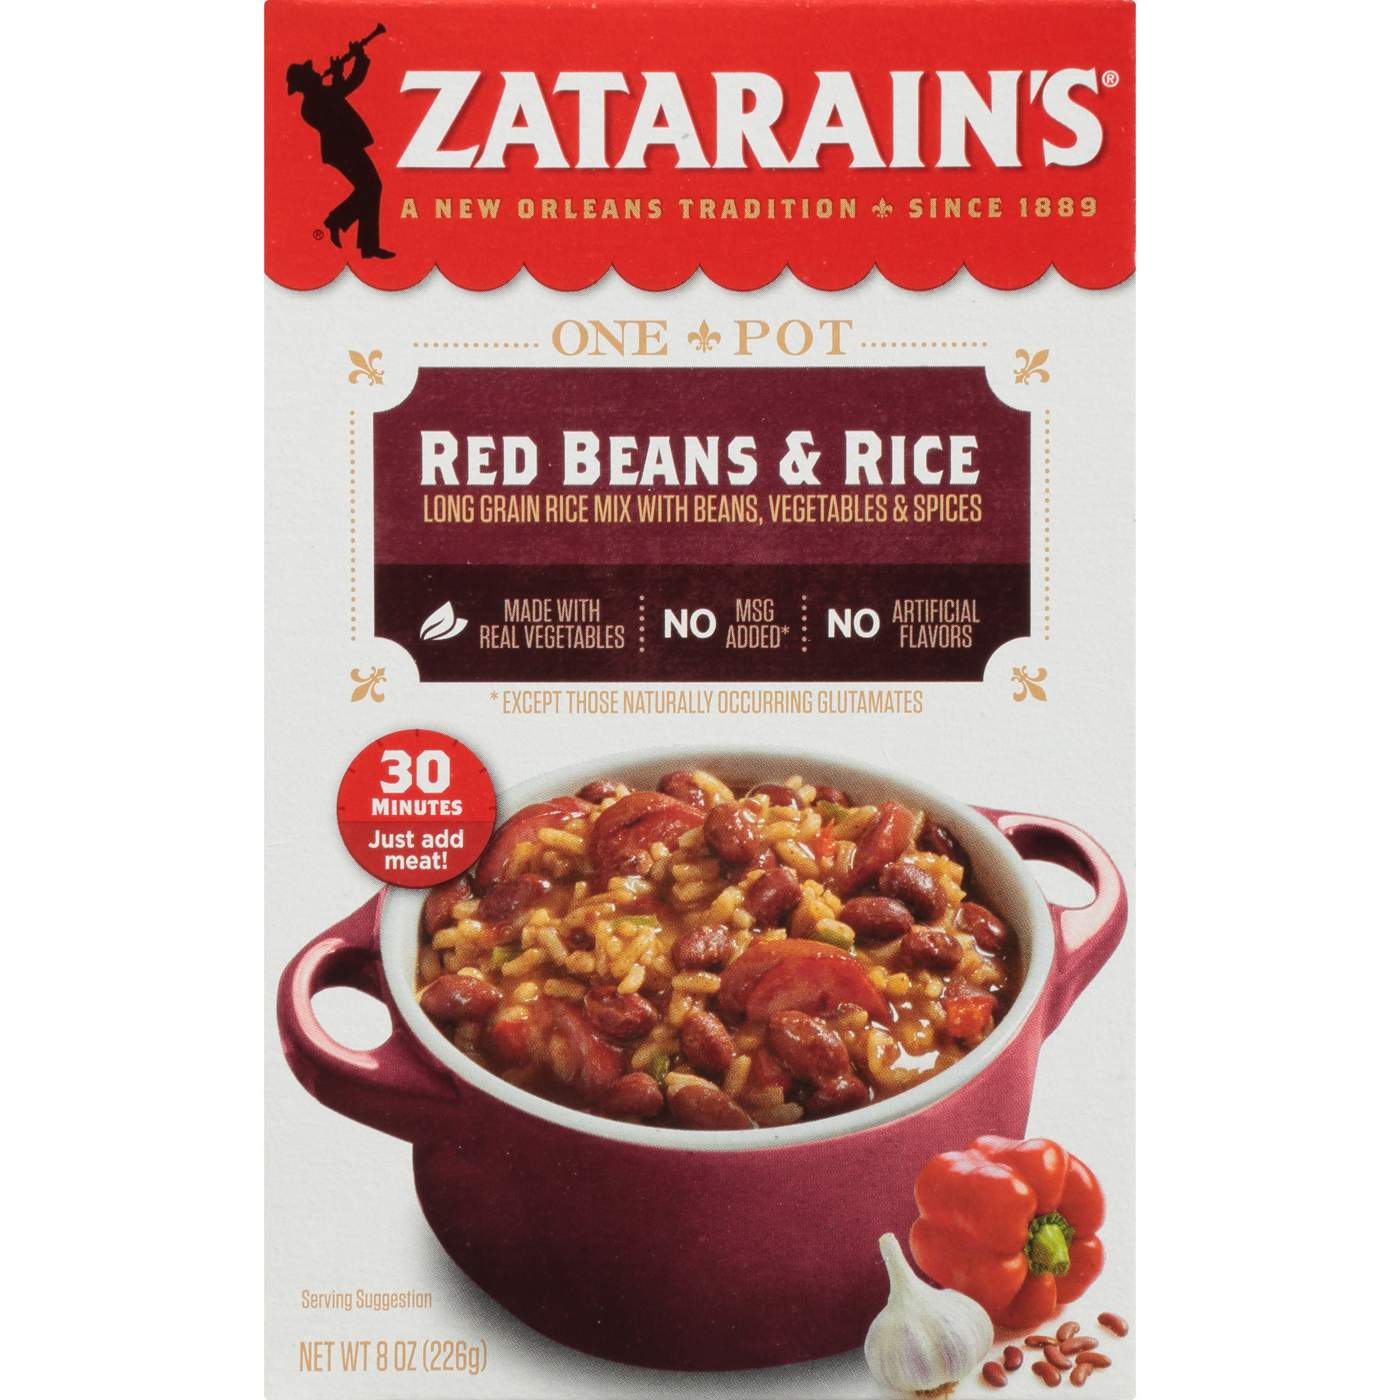 Zatarain's Red Beans & Rice Dinner Mix; image 1 of 7